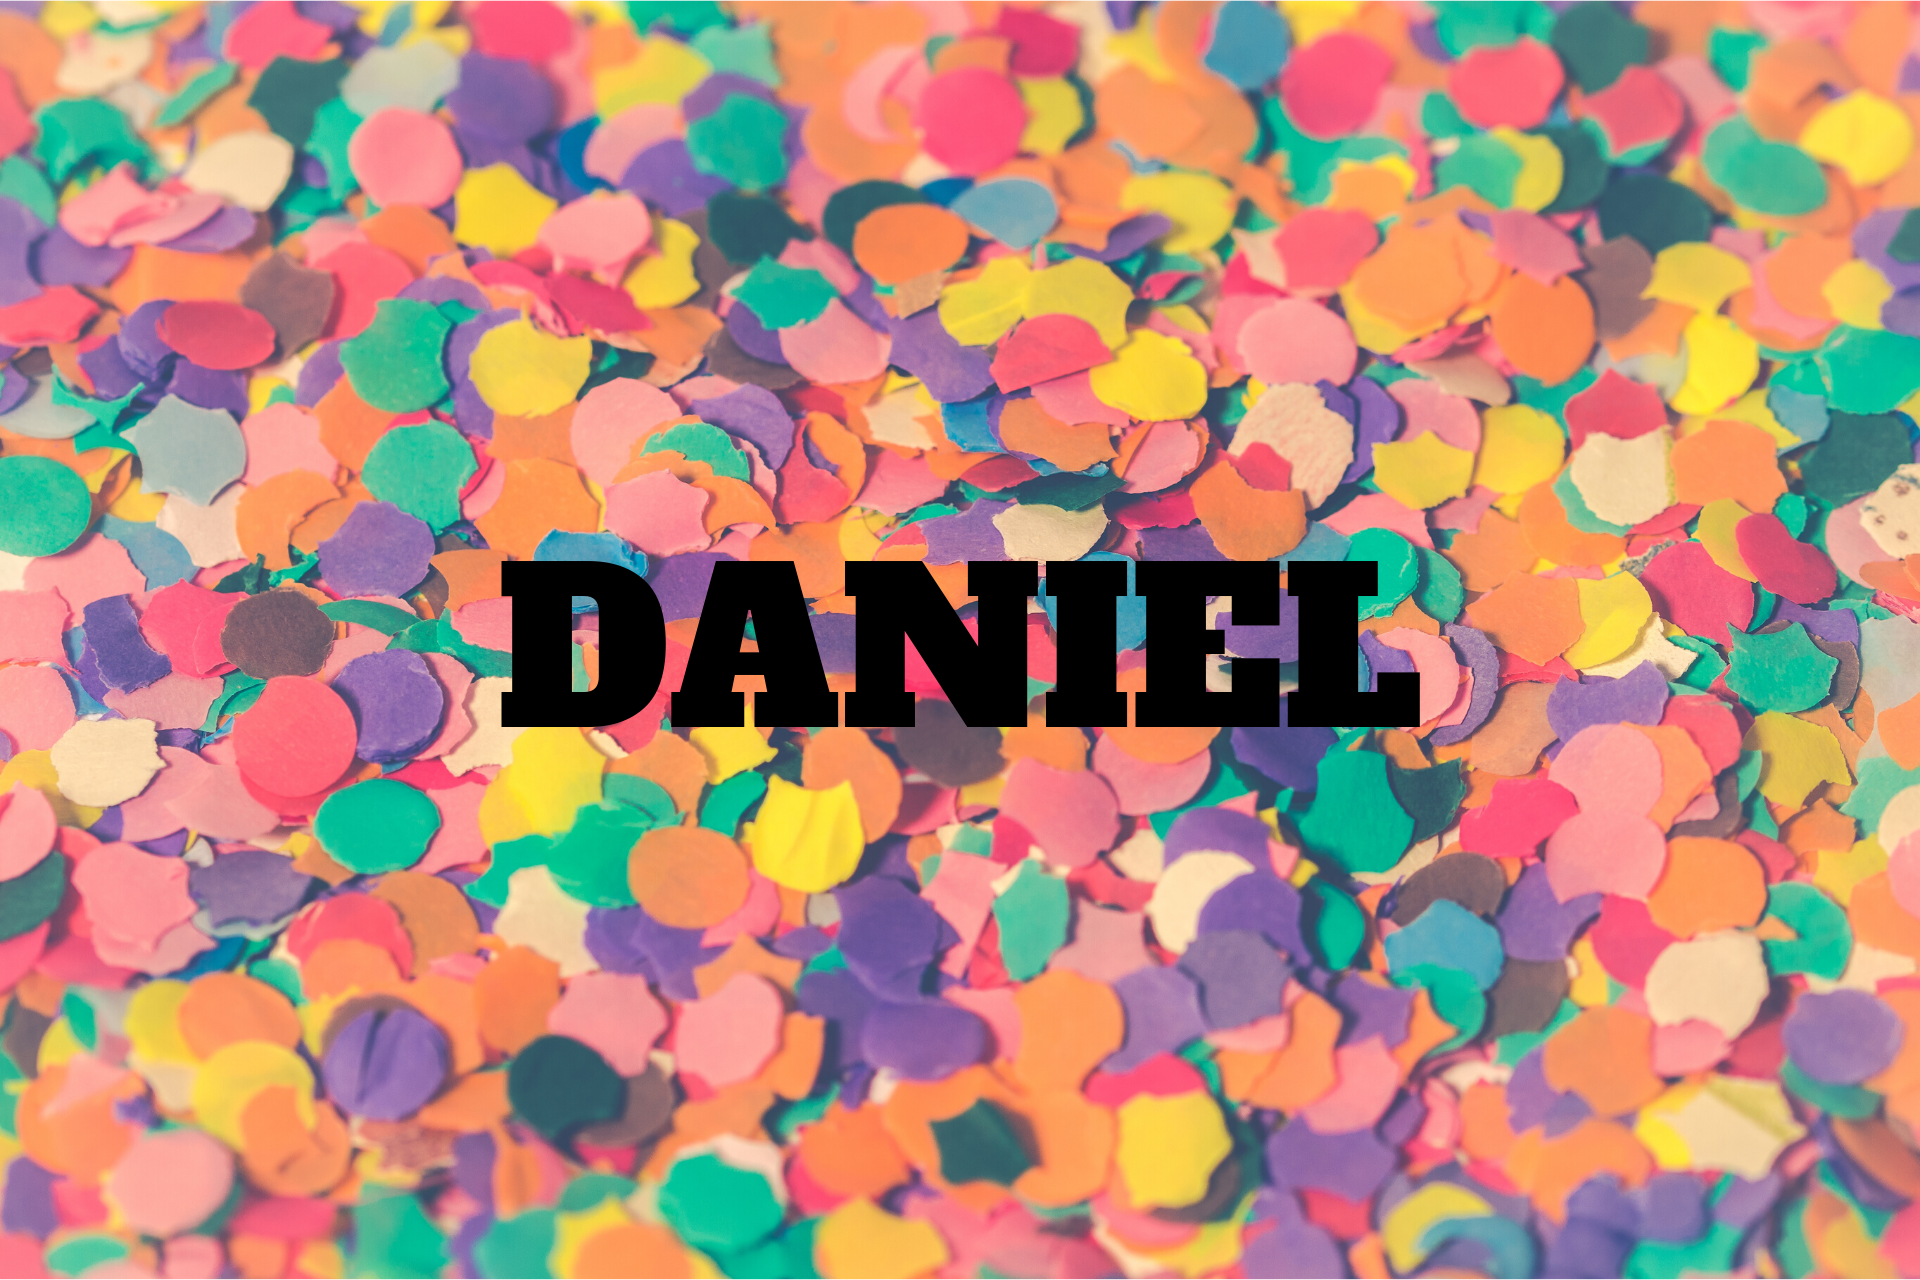  Daniel jelentése - név eredete, története, személyiség és népszerűsége